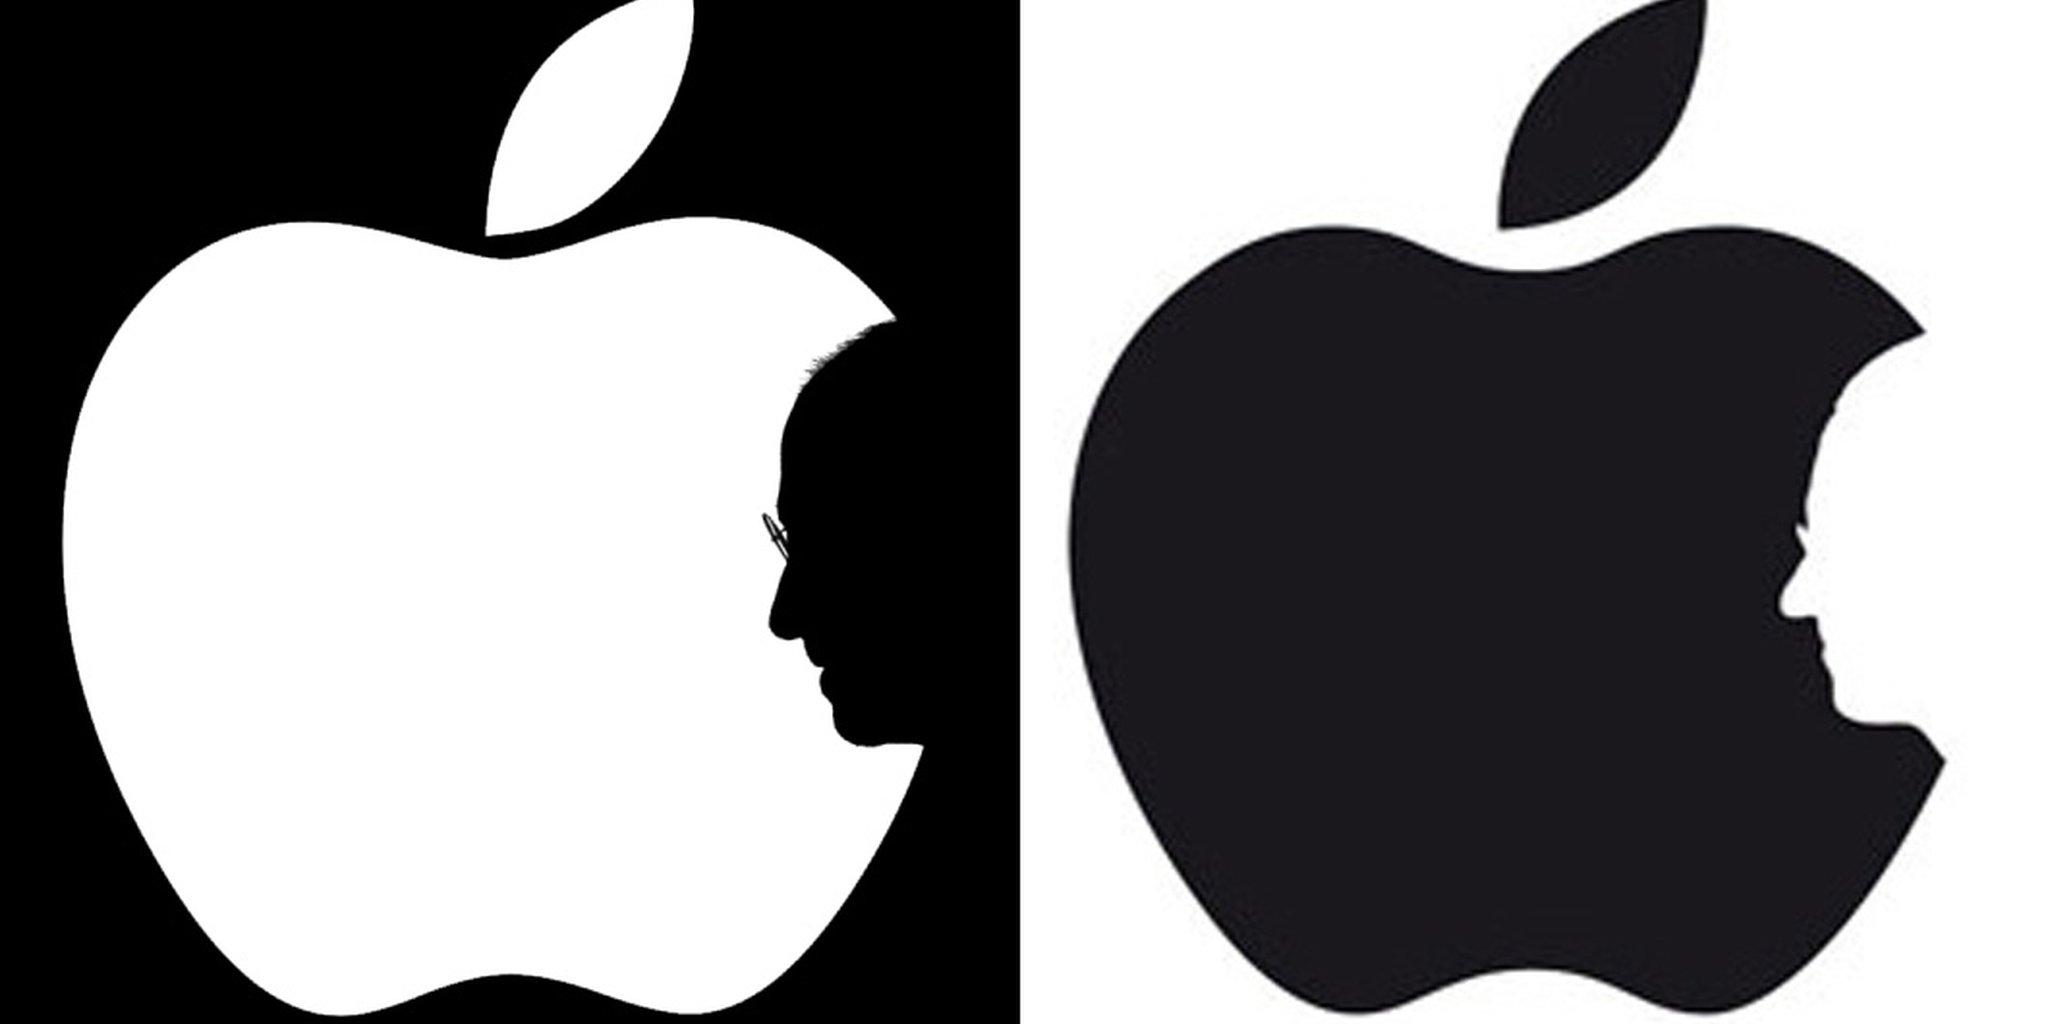 Steve Jobs Apple Logo - Two illustrators claim credit for the same Steve Jobs portrait